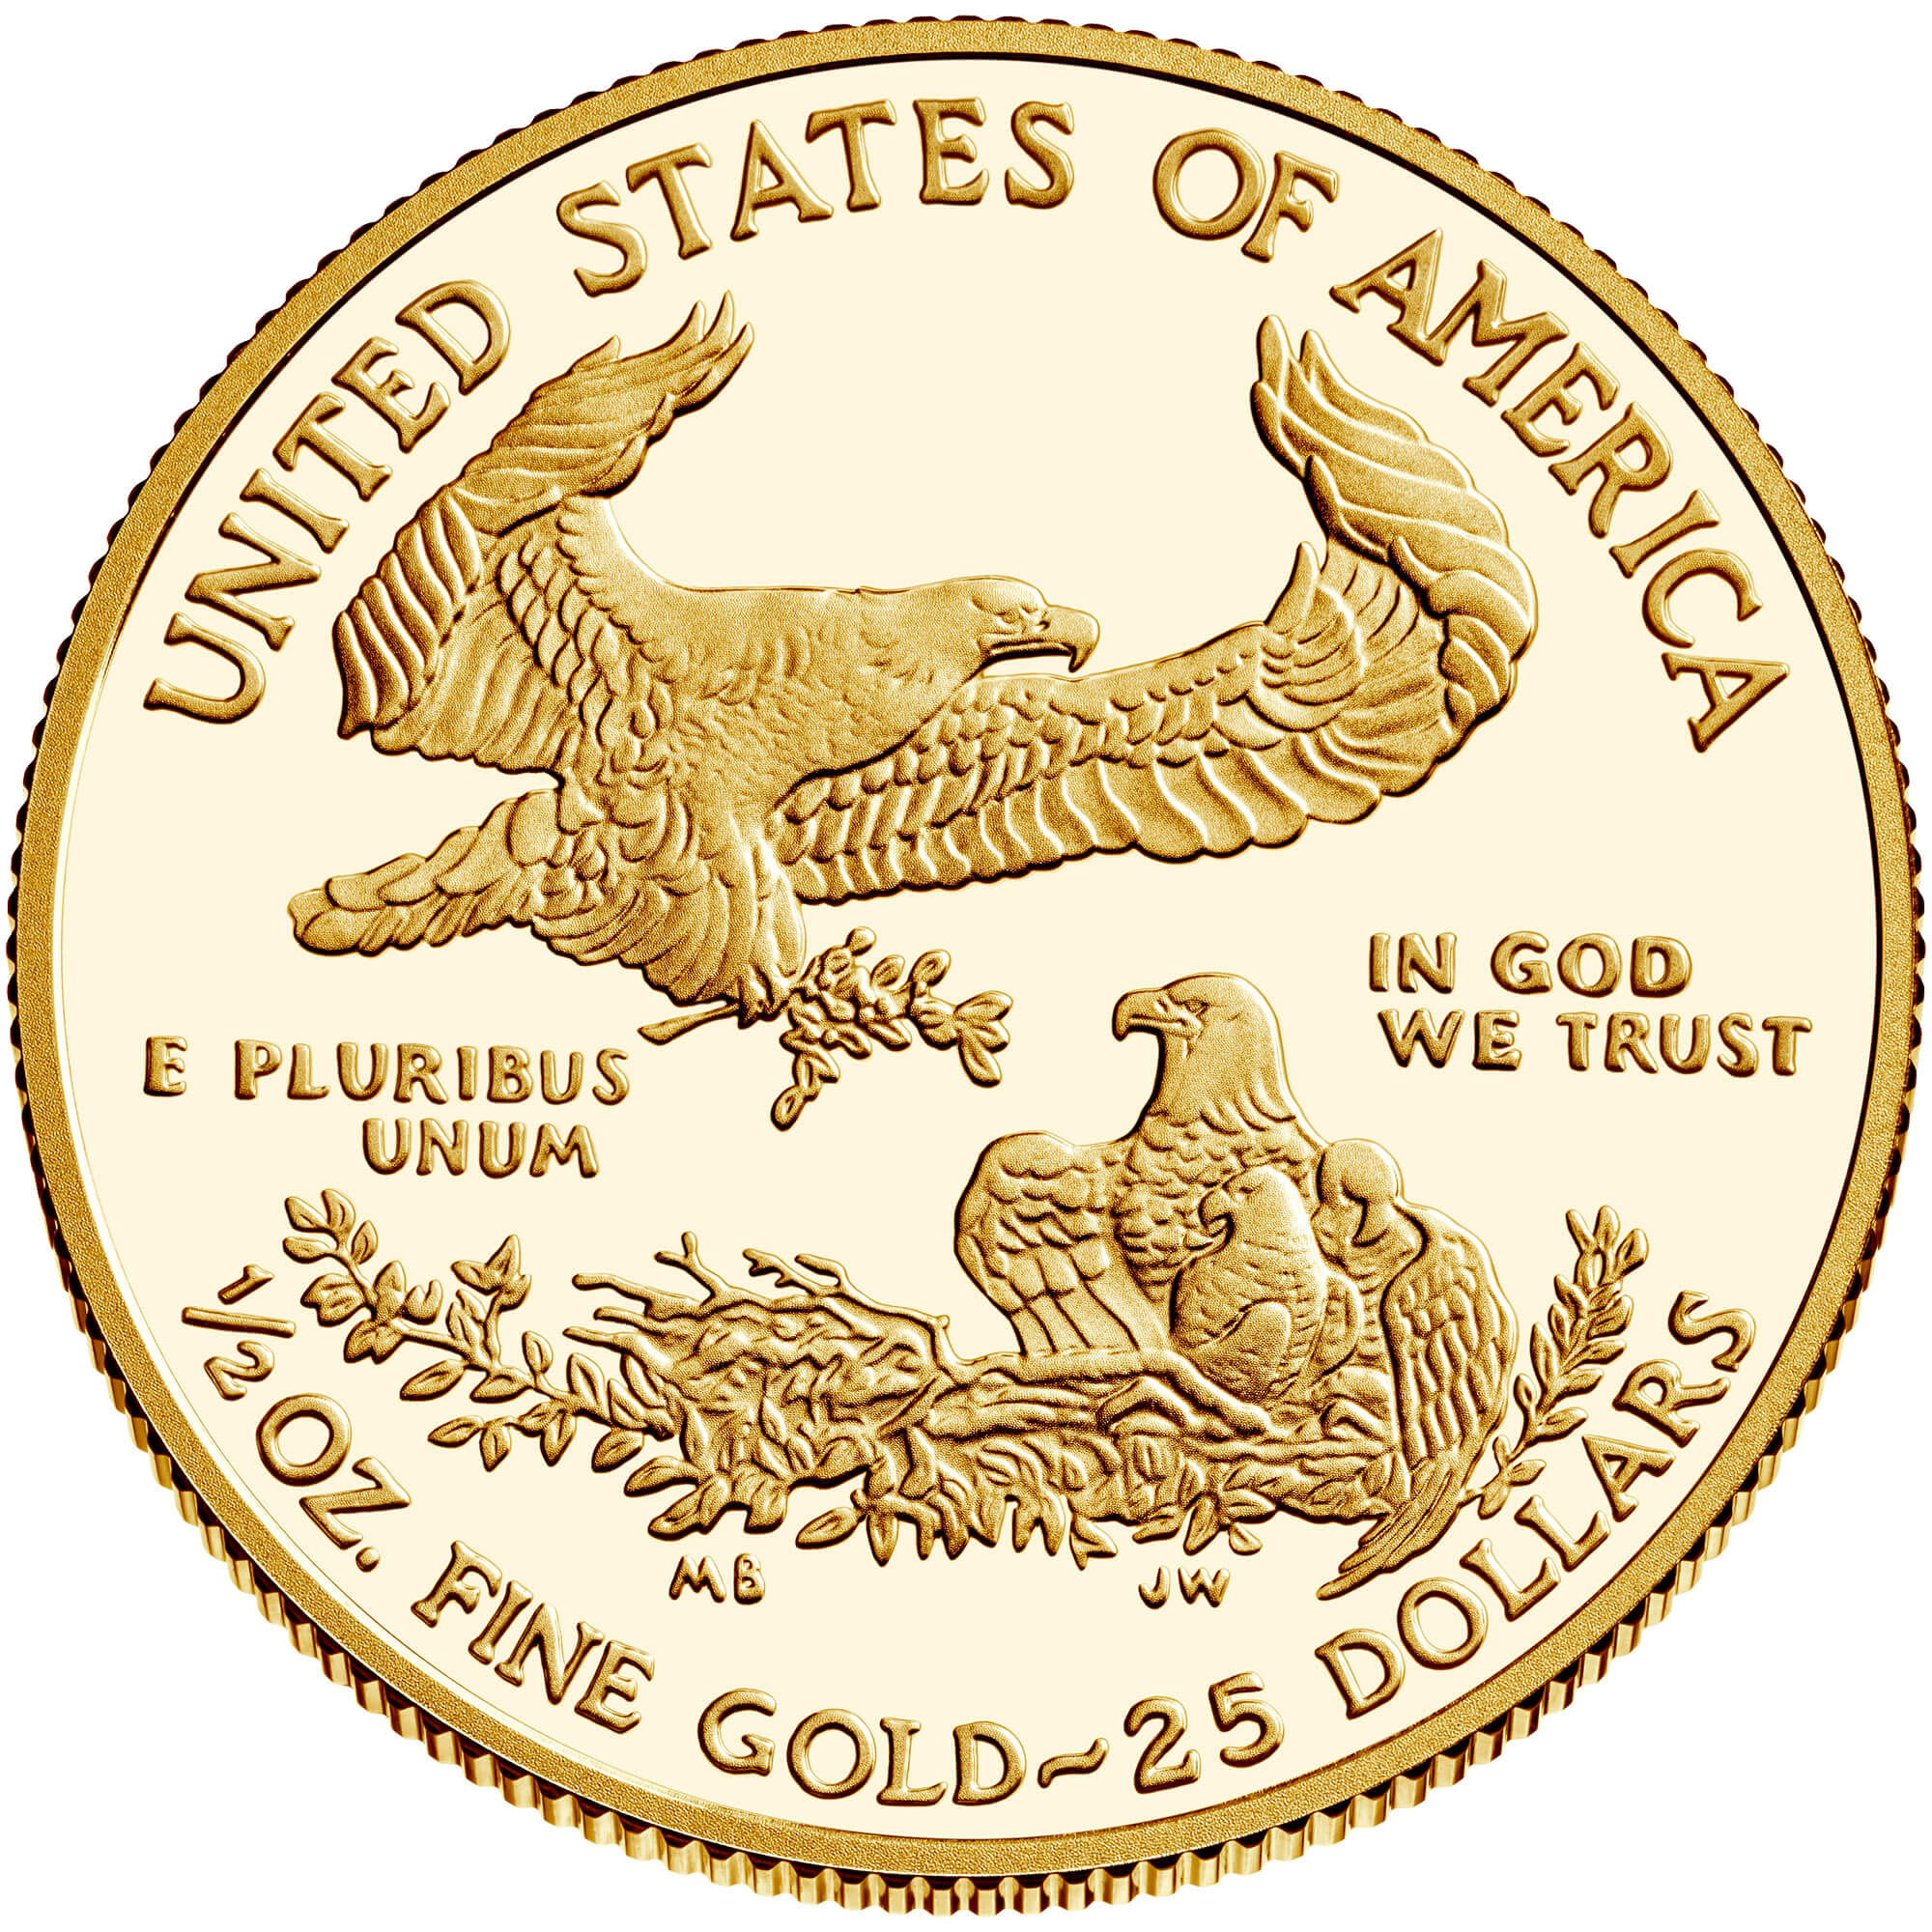 US 25 Dollars 1999 W